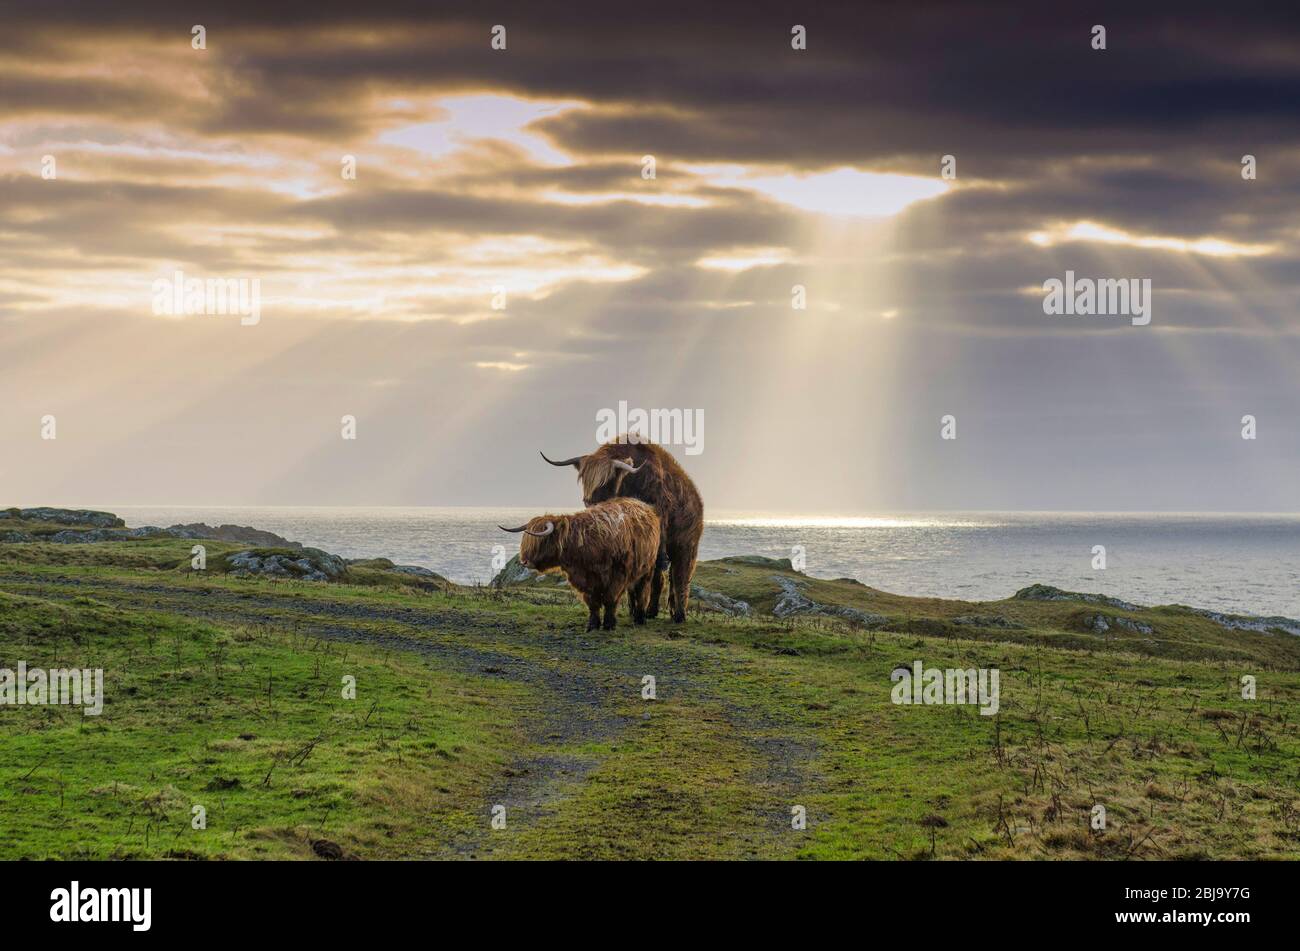 Le bétail des Highlands écossais se reproduit. Accouplement Banque D'Images